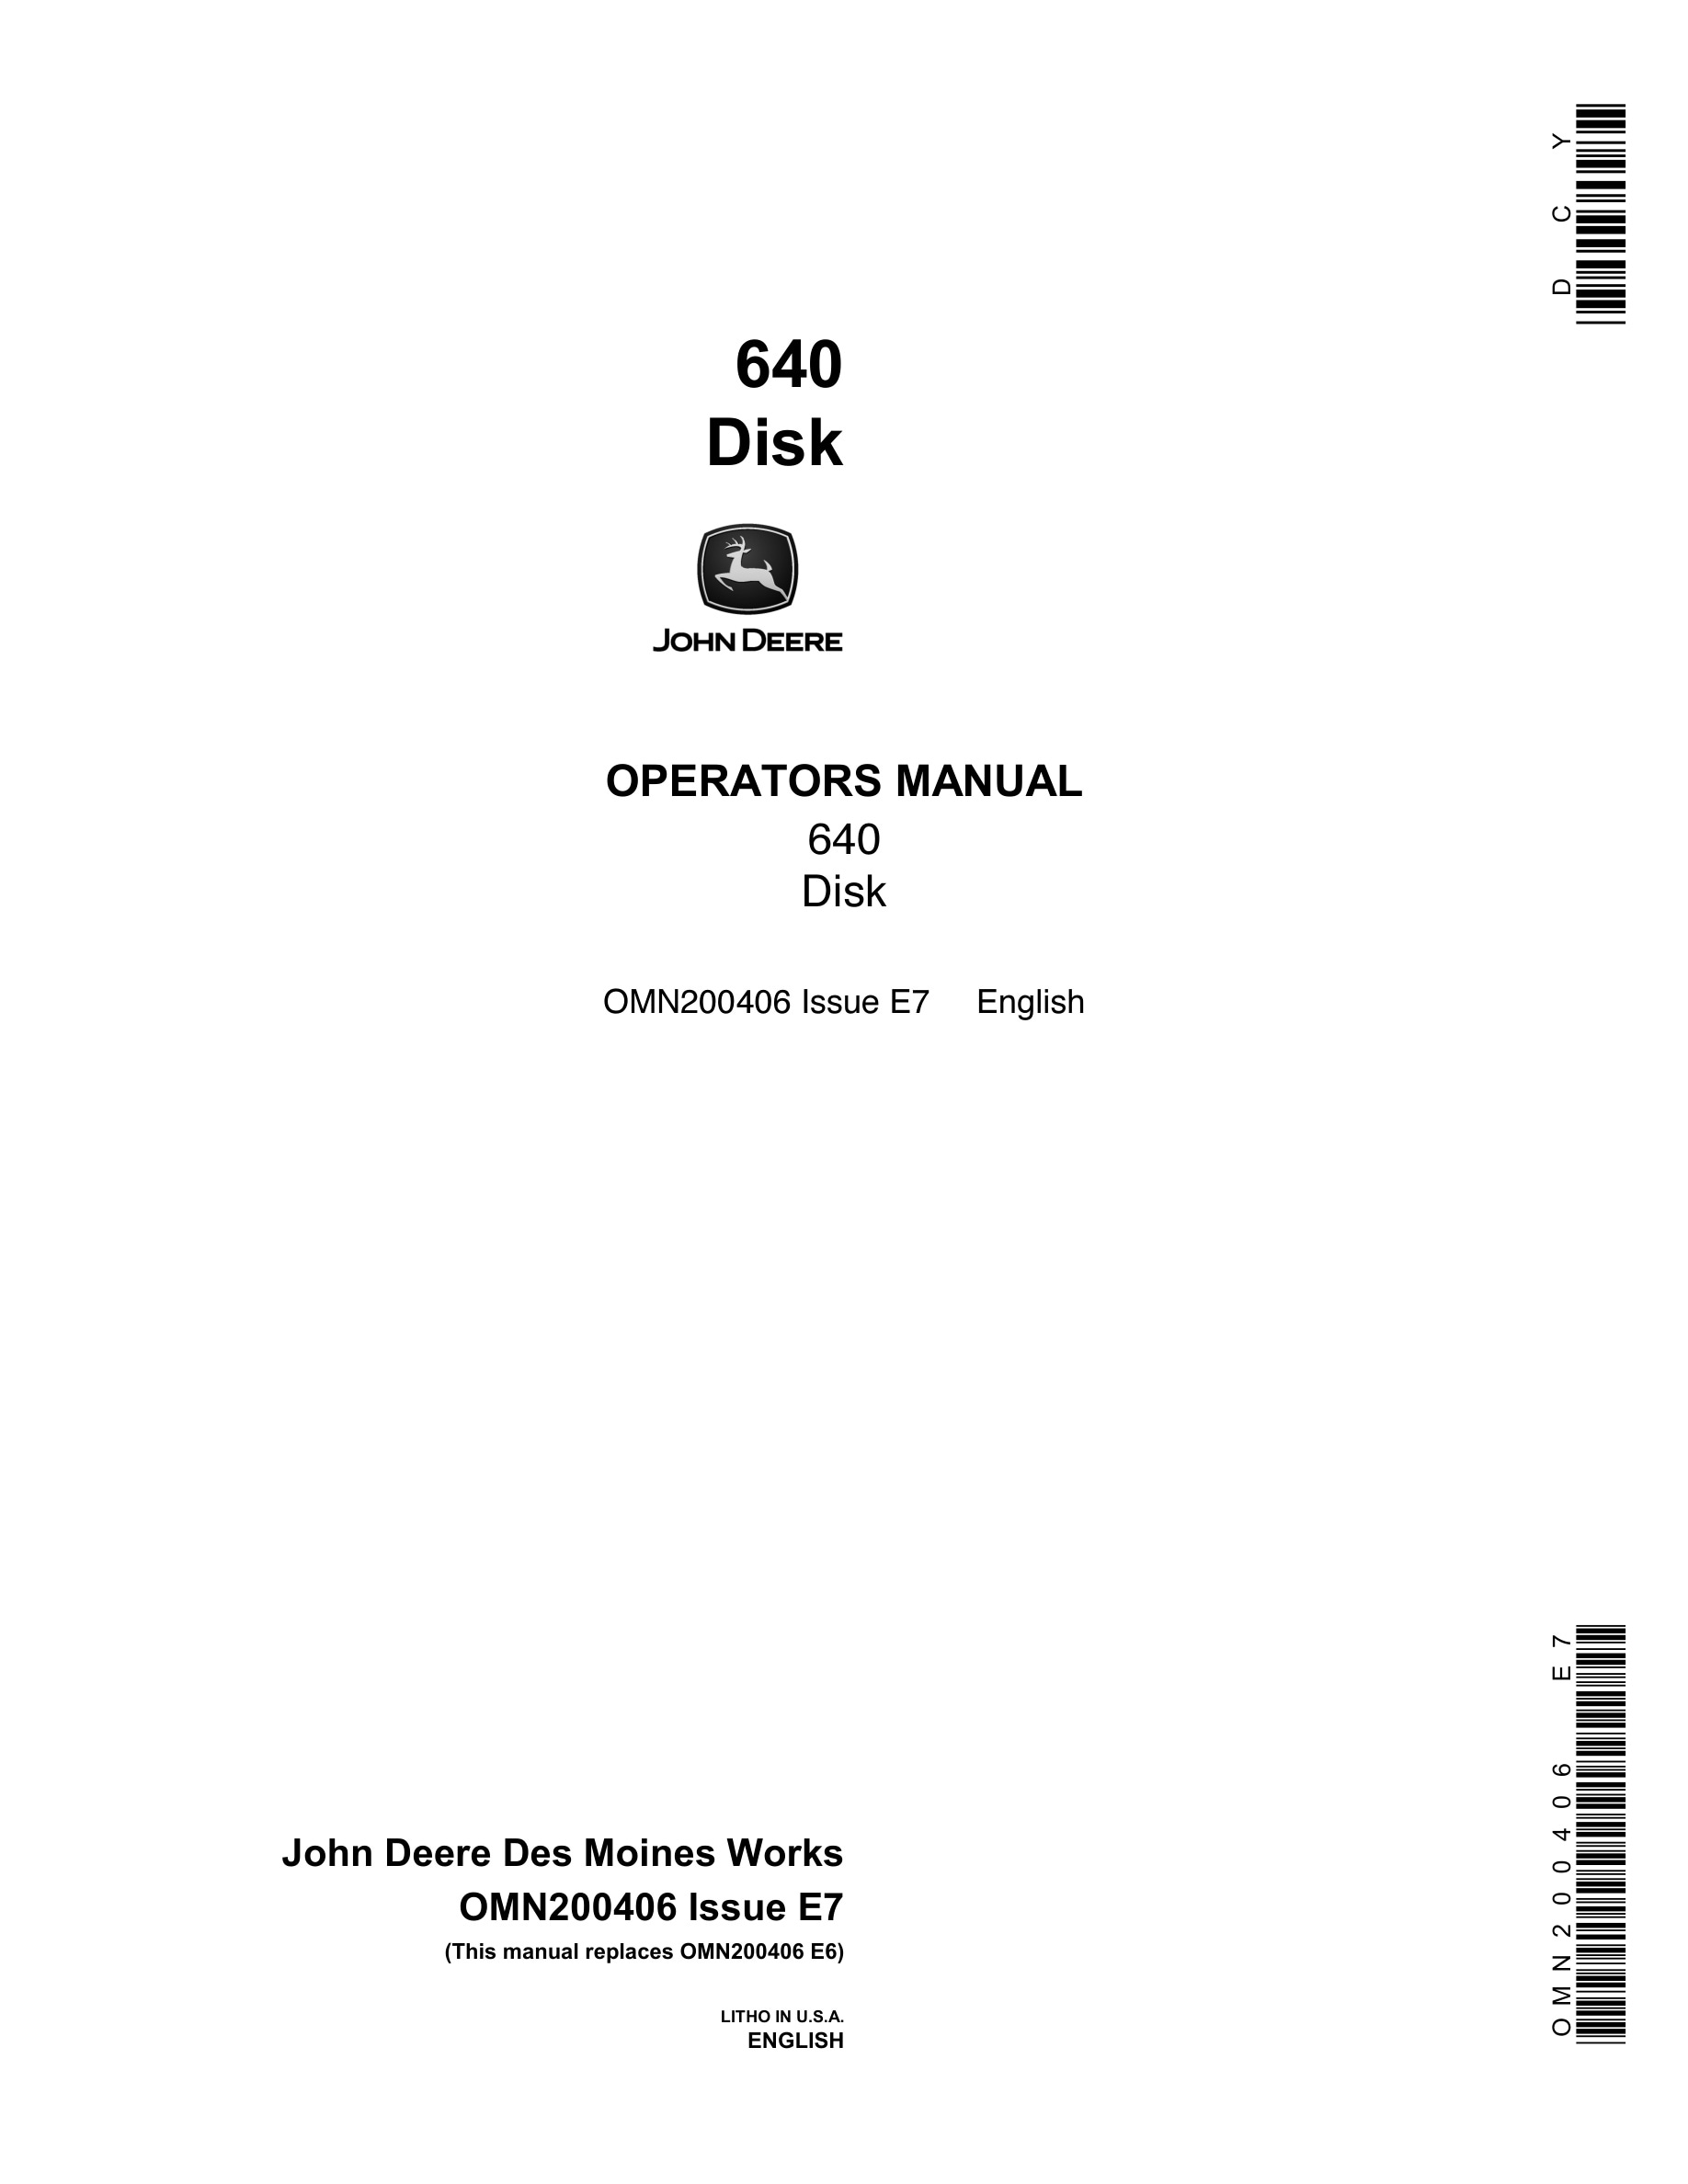 John Deere 640 DISK Operator Manual OMN200406-1